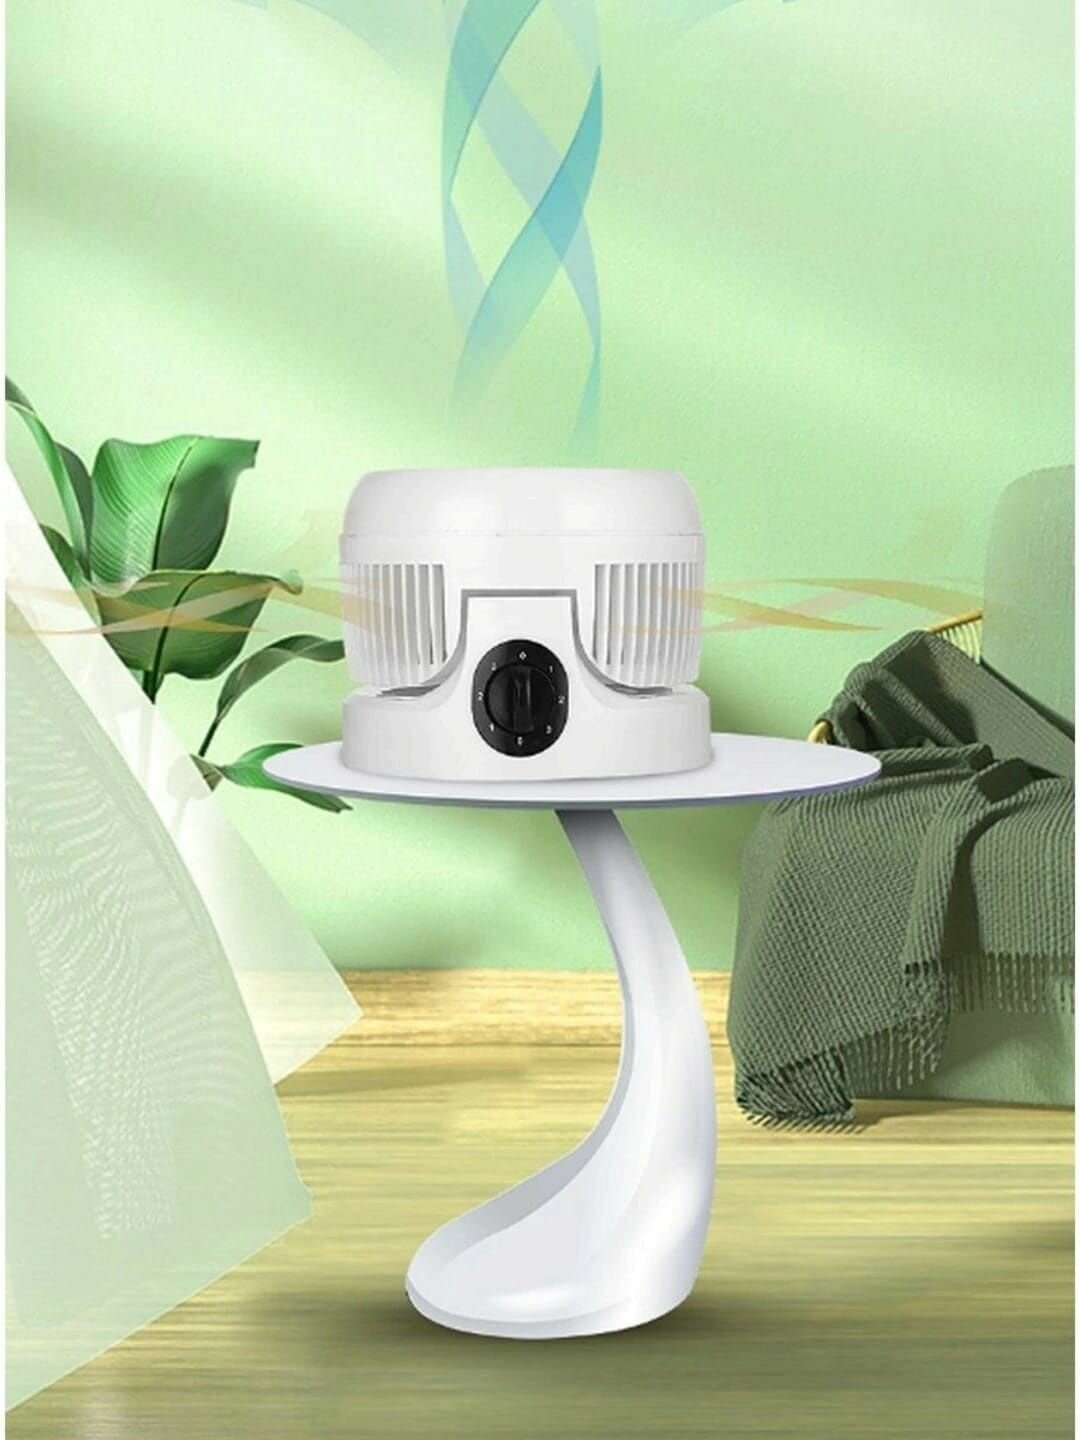 Складной настольный вентилятор для циркуляции воздуха, цвет белый - фотография № 3